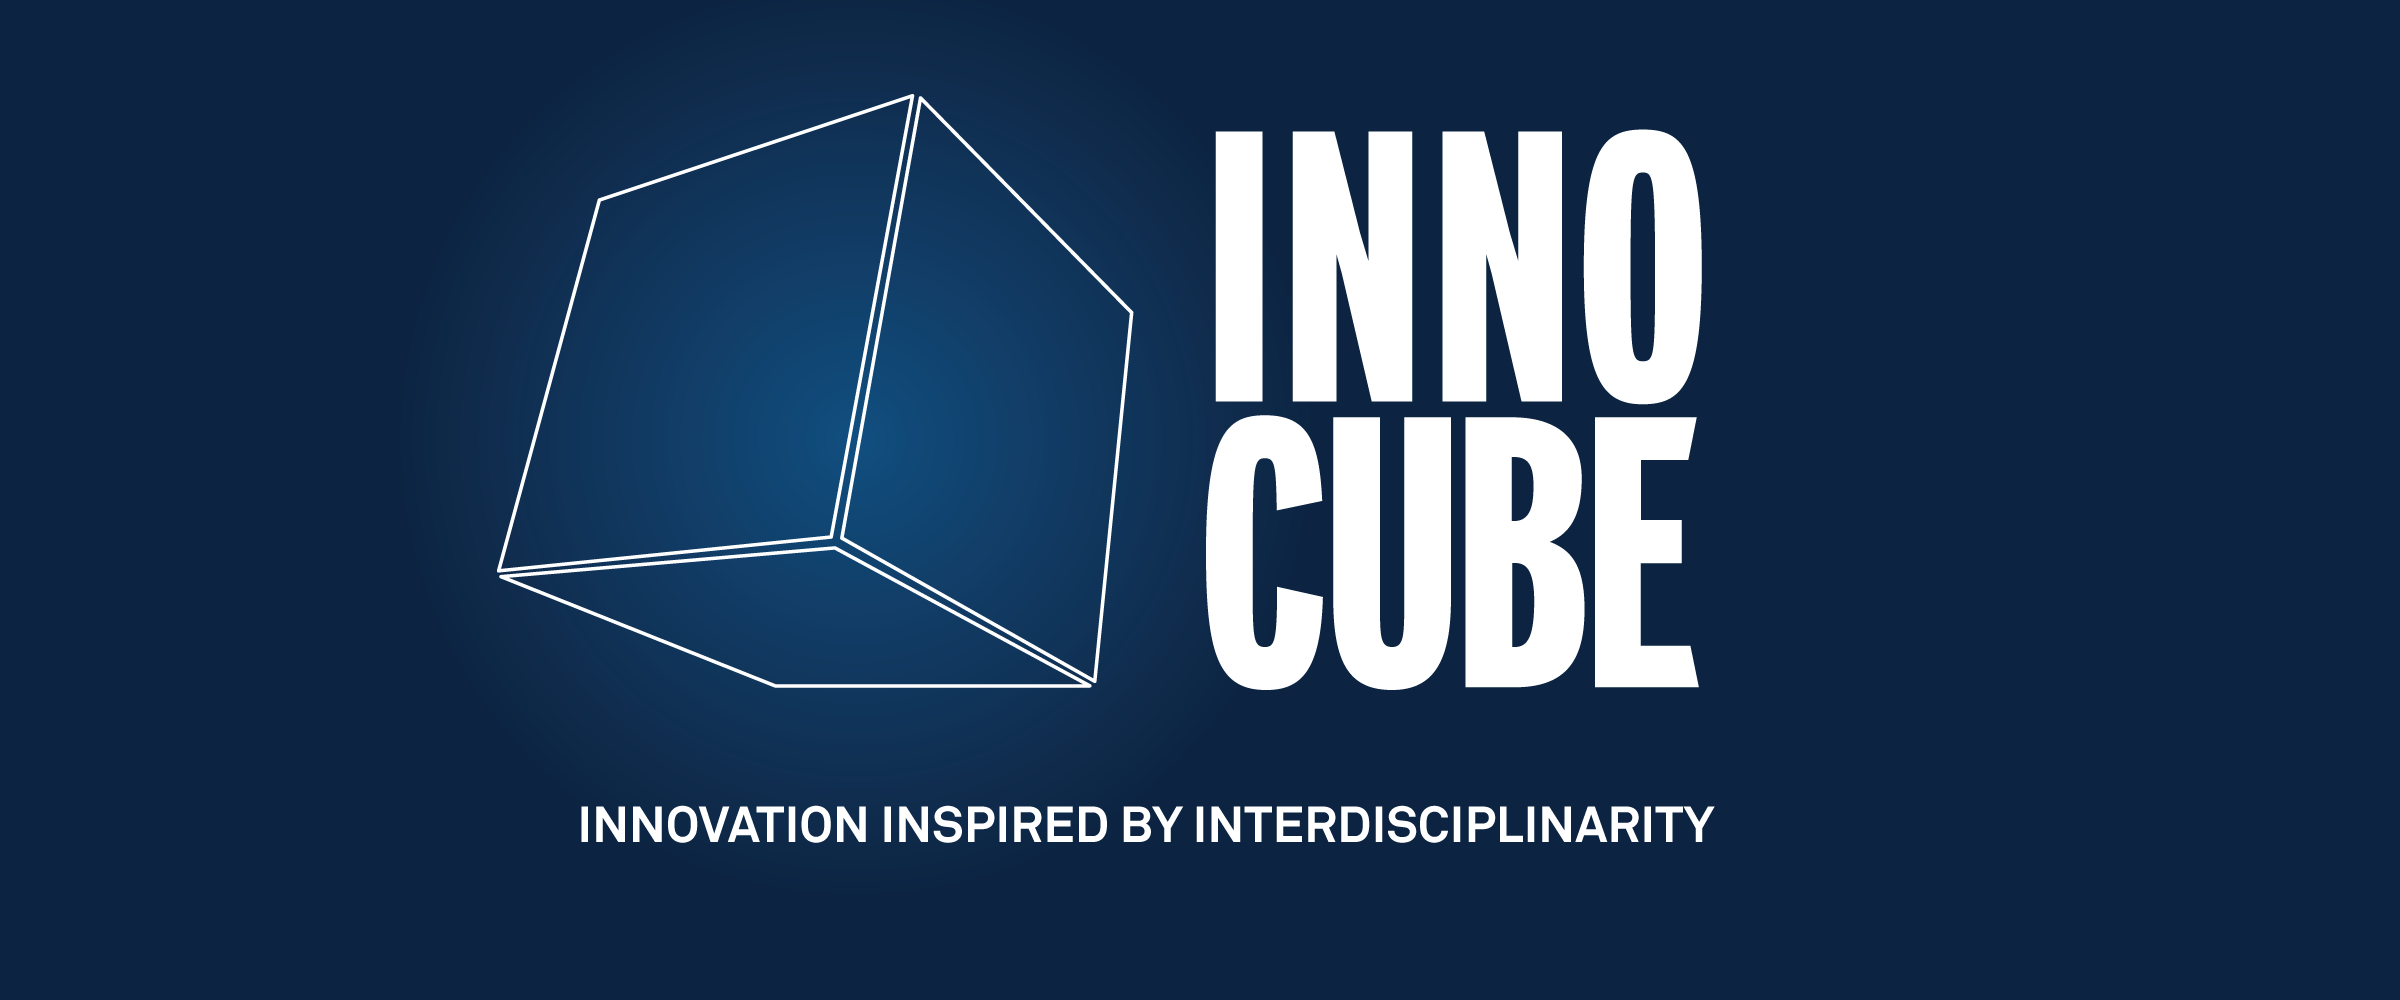 20210201-master-innovation-logo-INNOCUBE-fond-bleu-hd.png